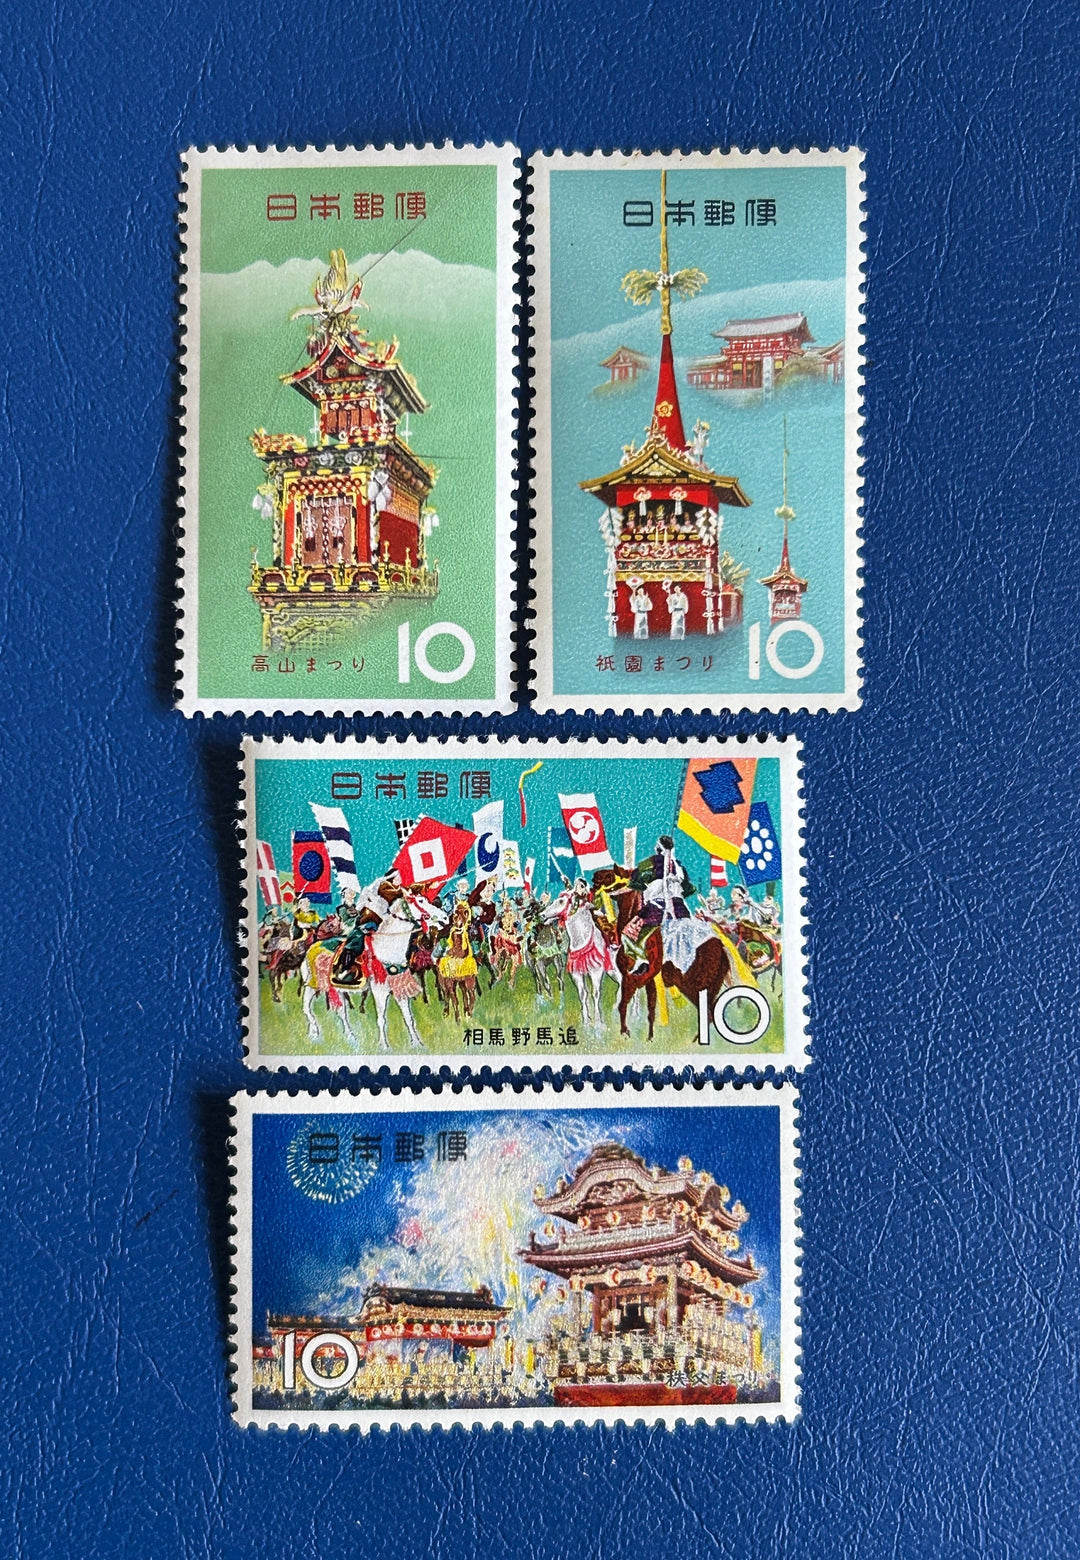 Japan - Original Vintage Postage Stamps- 1964-65 - Festivals - for the collector, artist or crafter